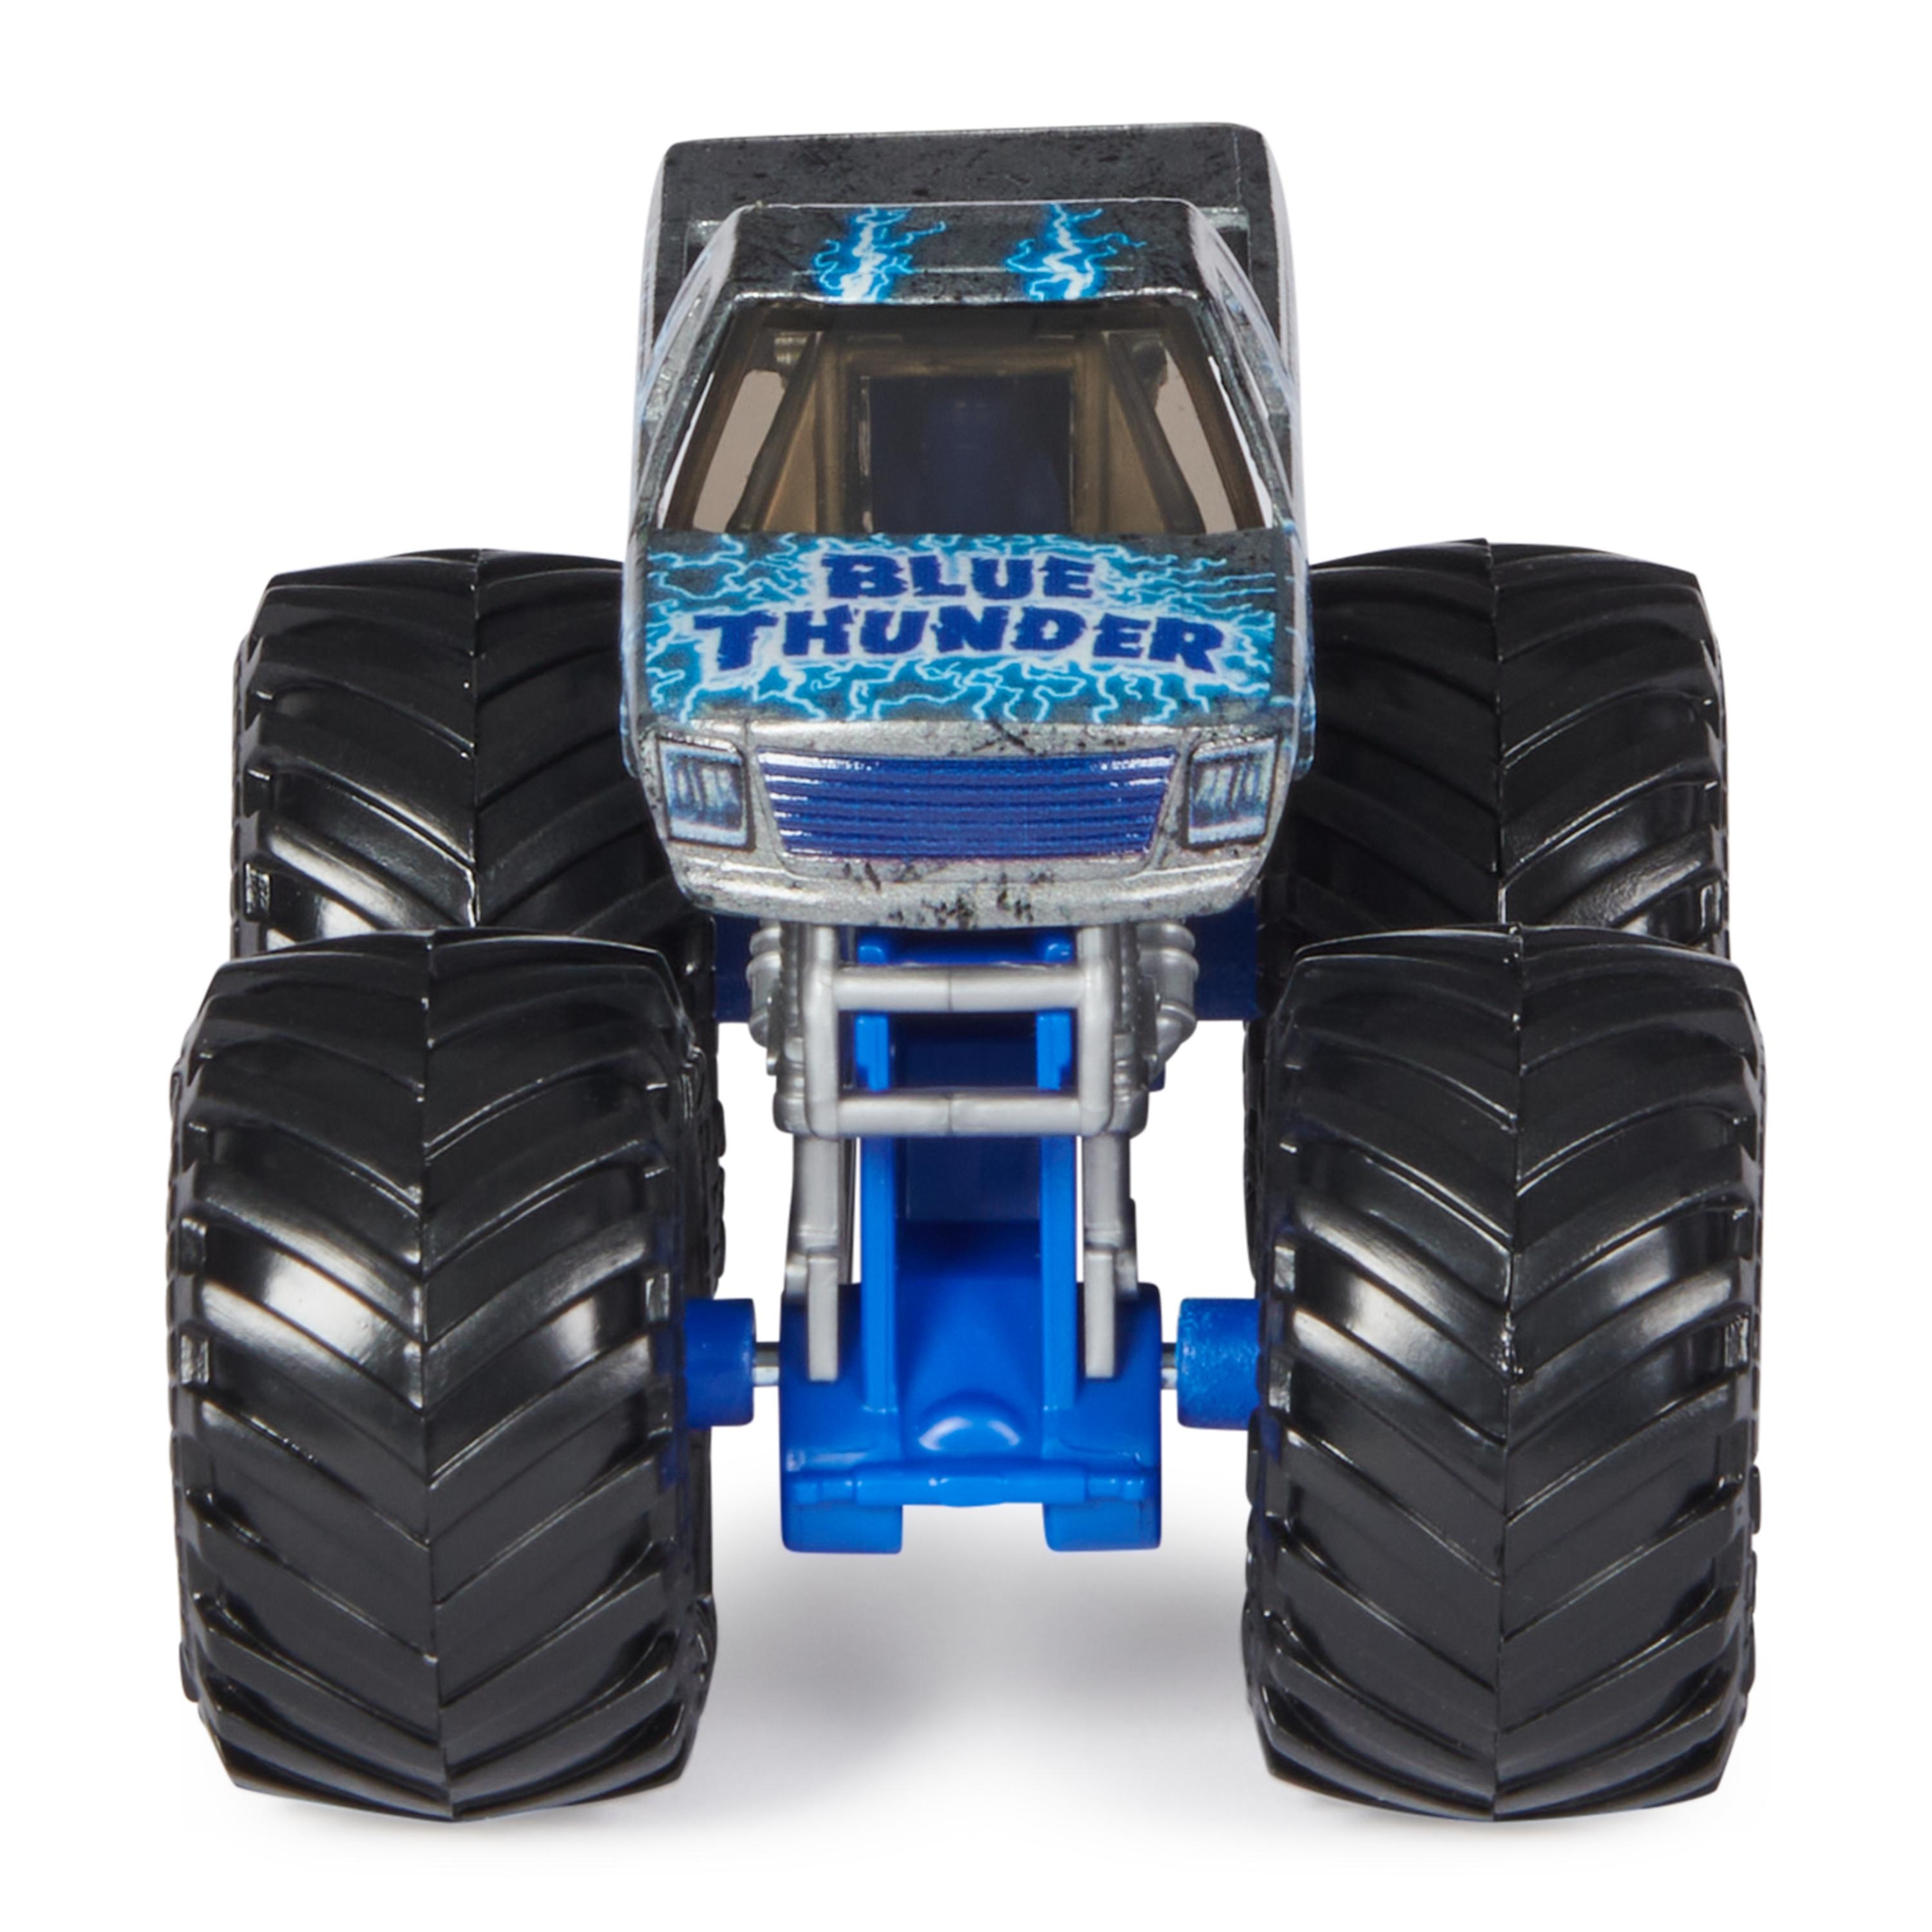 1:64 Blue Thunder - Steel Reveal - Series 30